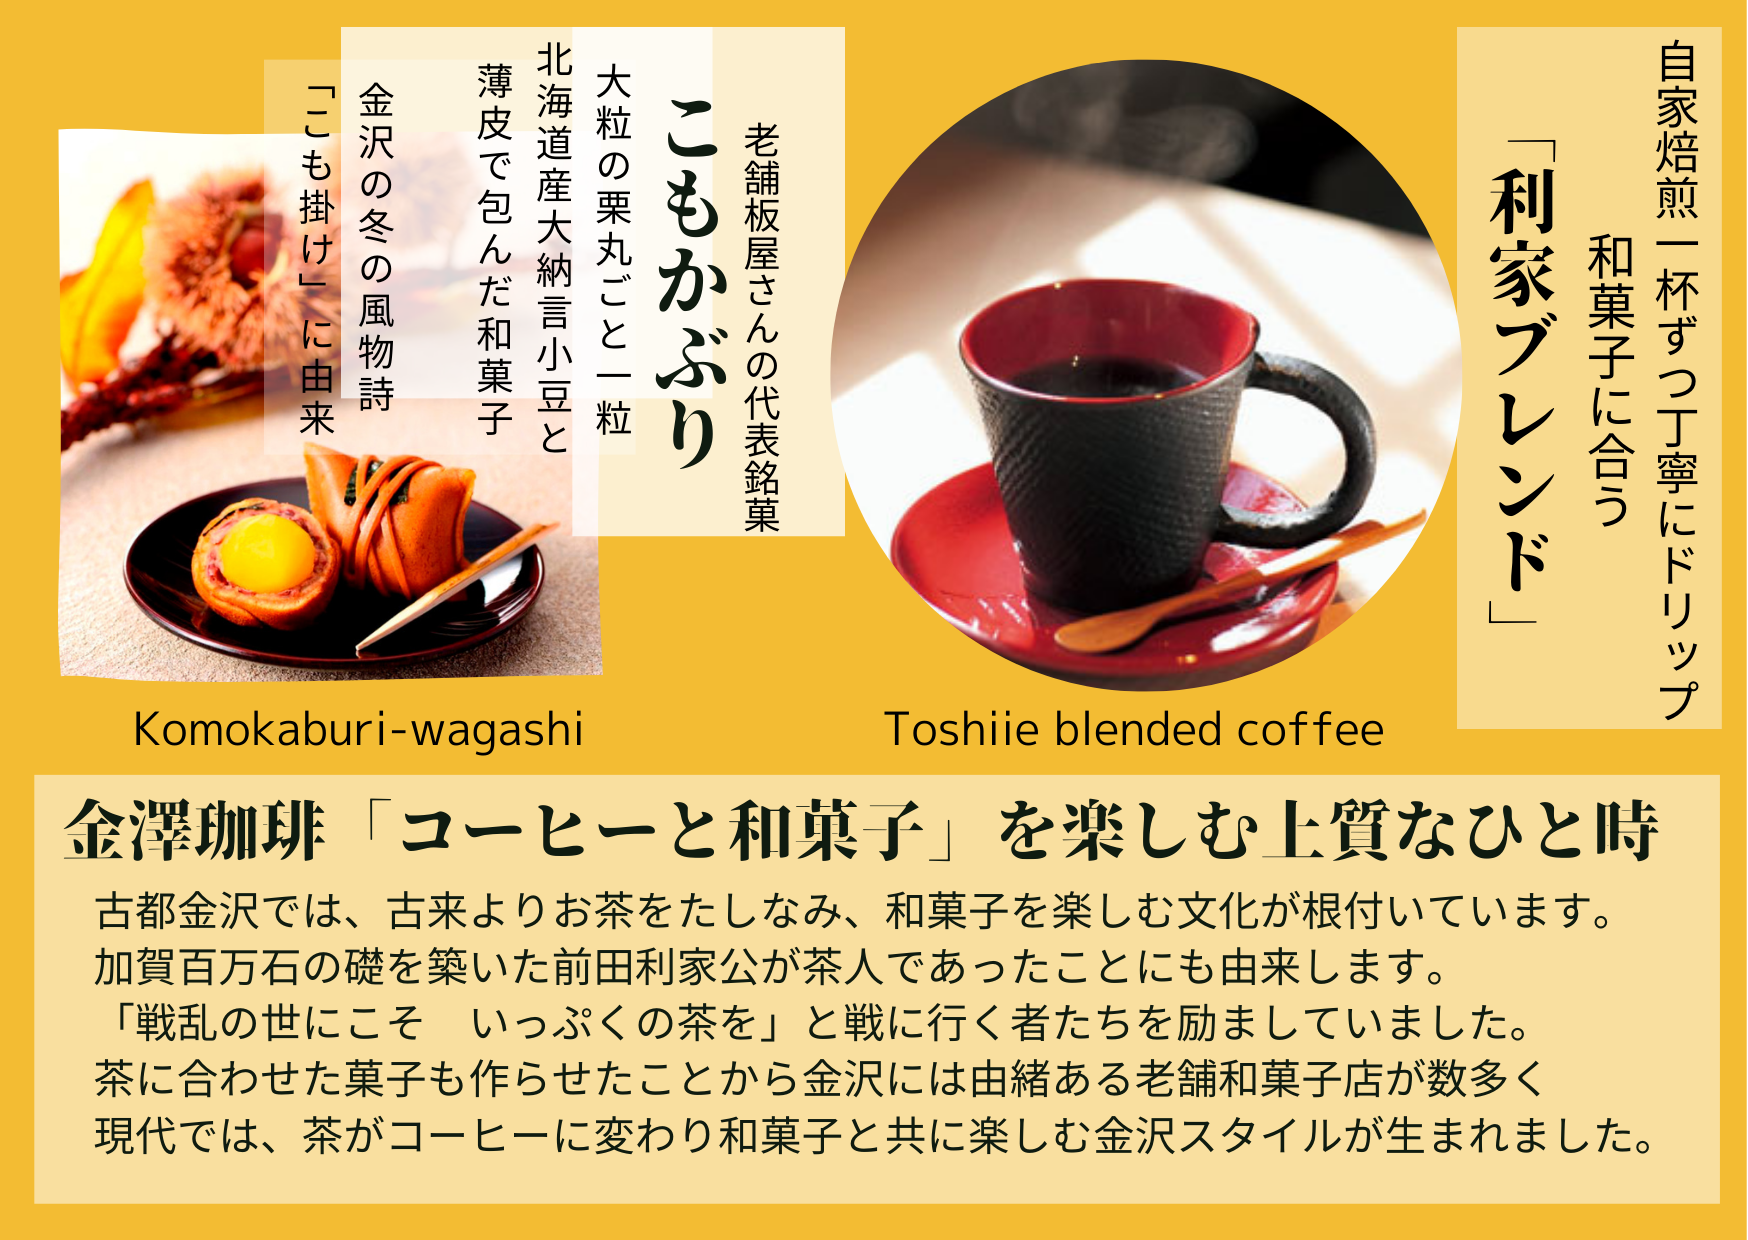 金澤珈琲ーコーヒーと和菓子を楽しむ上質なひと時 (1)